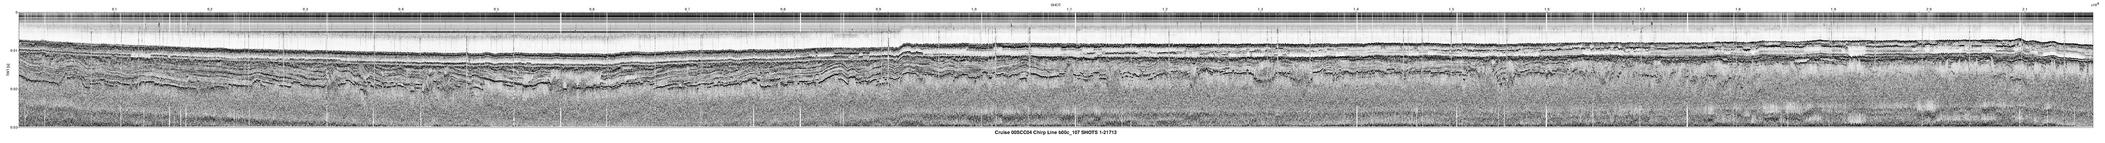 00SCC04 b00c_107 seismic profile image